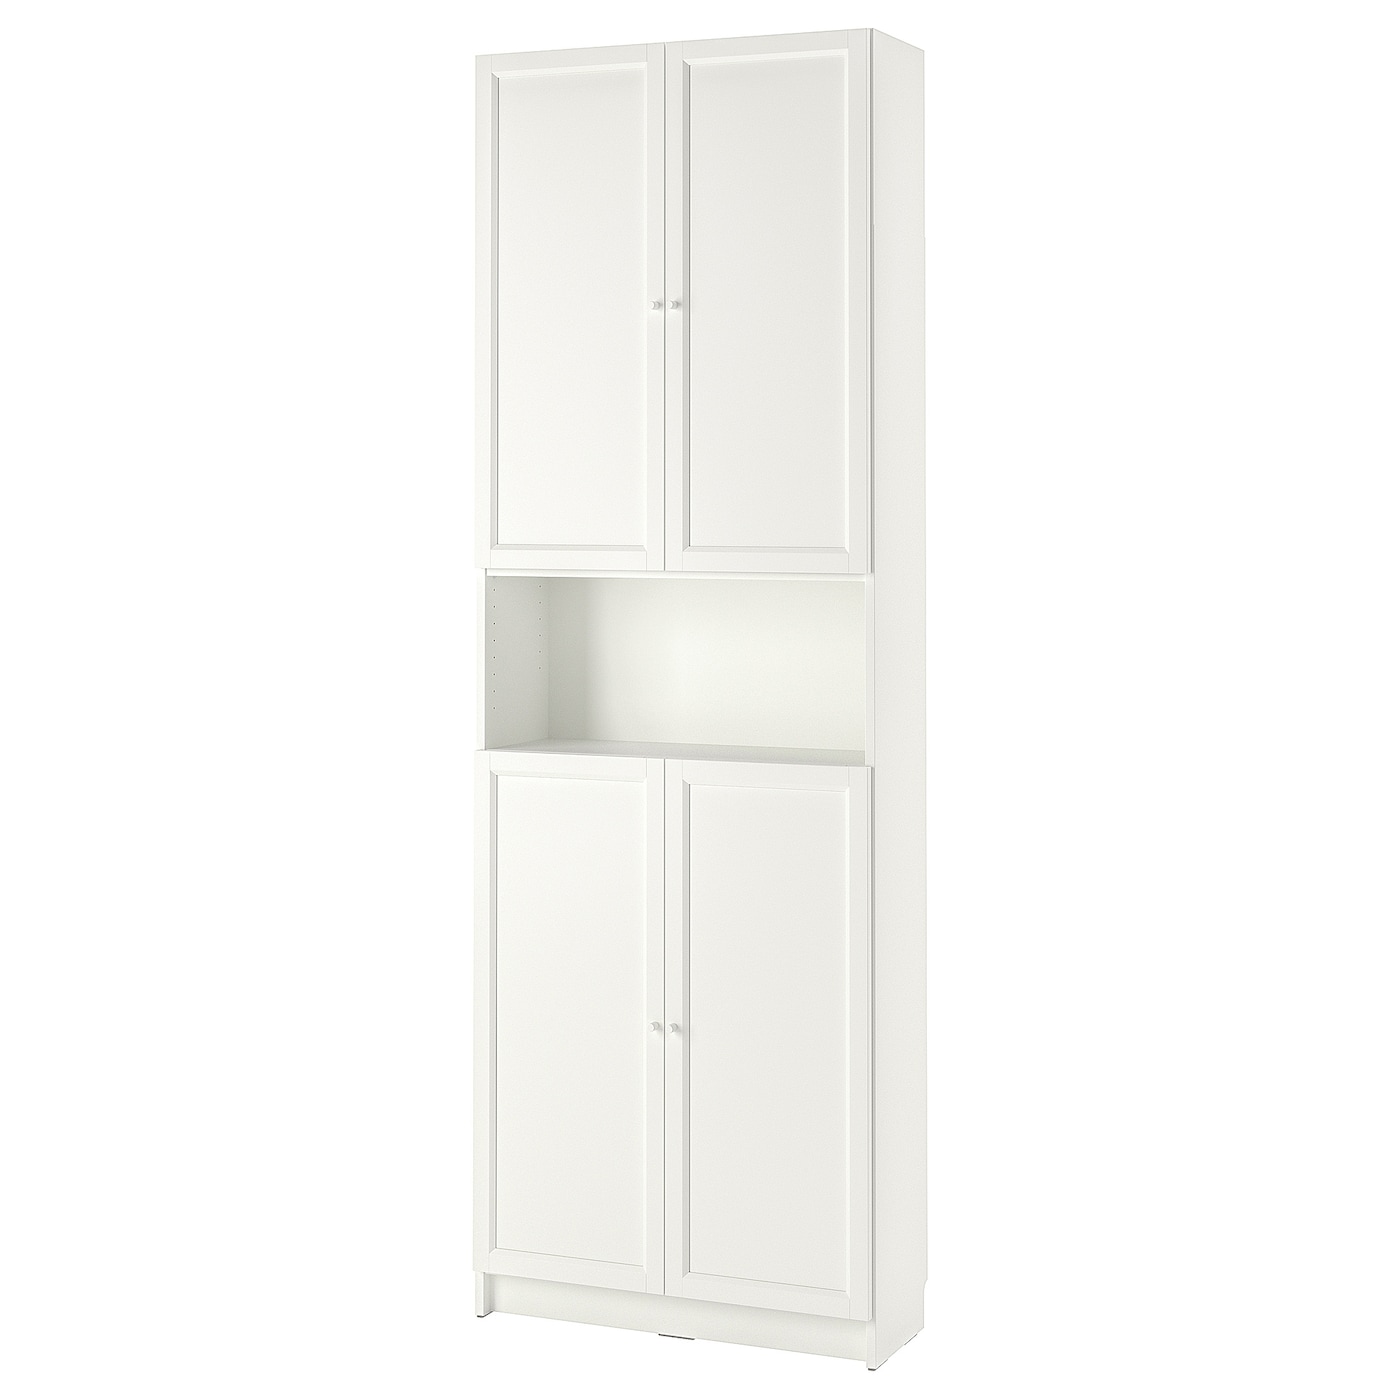 Открытый книжный шкаф - BILLY IKEA/БИЛЛИ ИКЕА, 30х80х237 см, белый